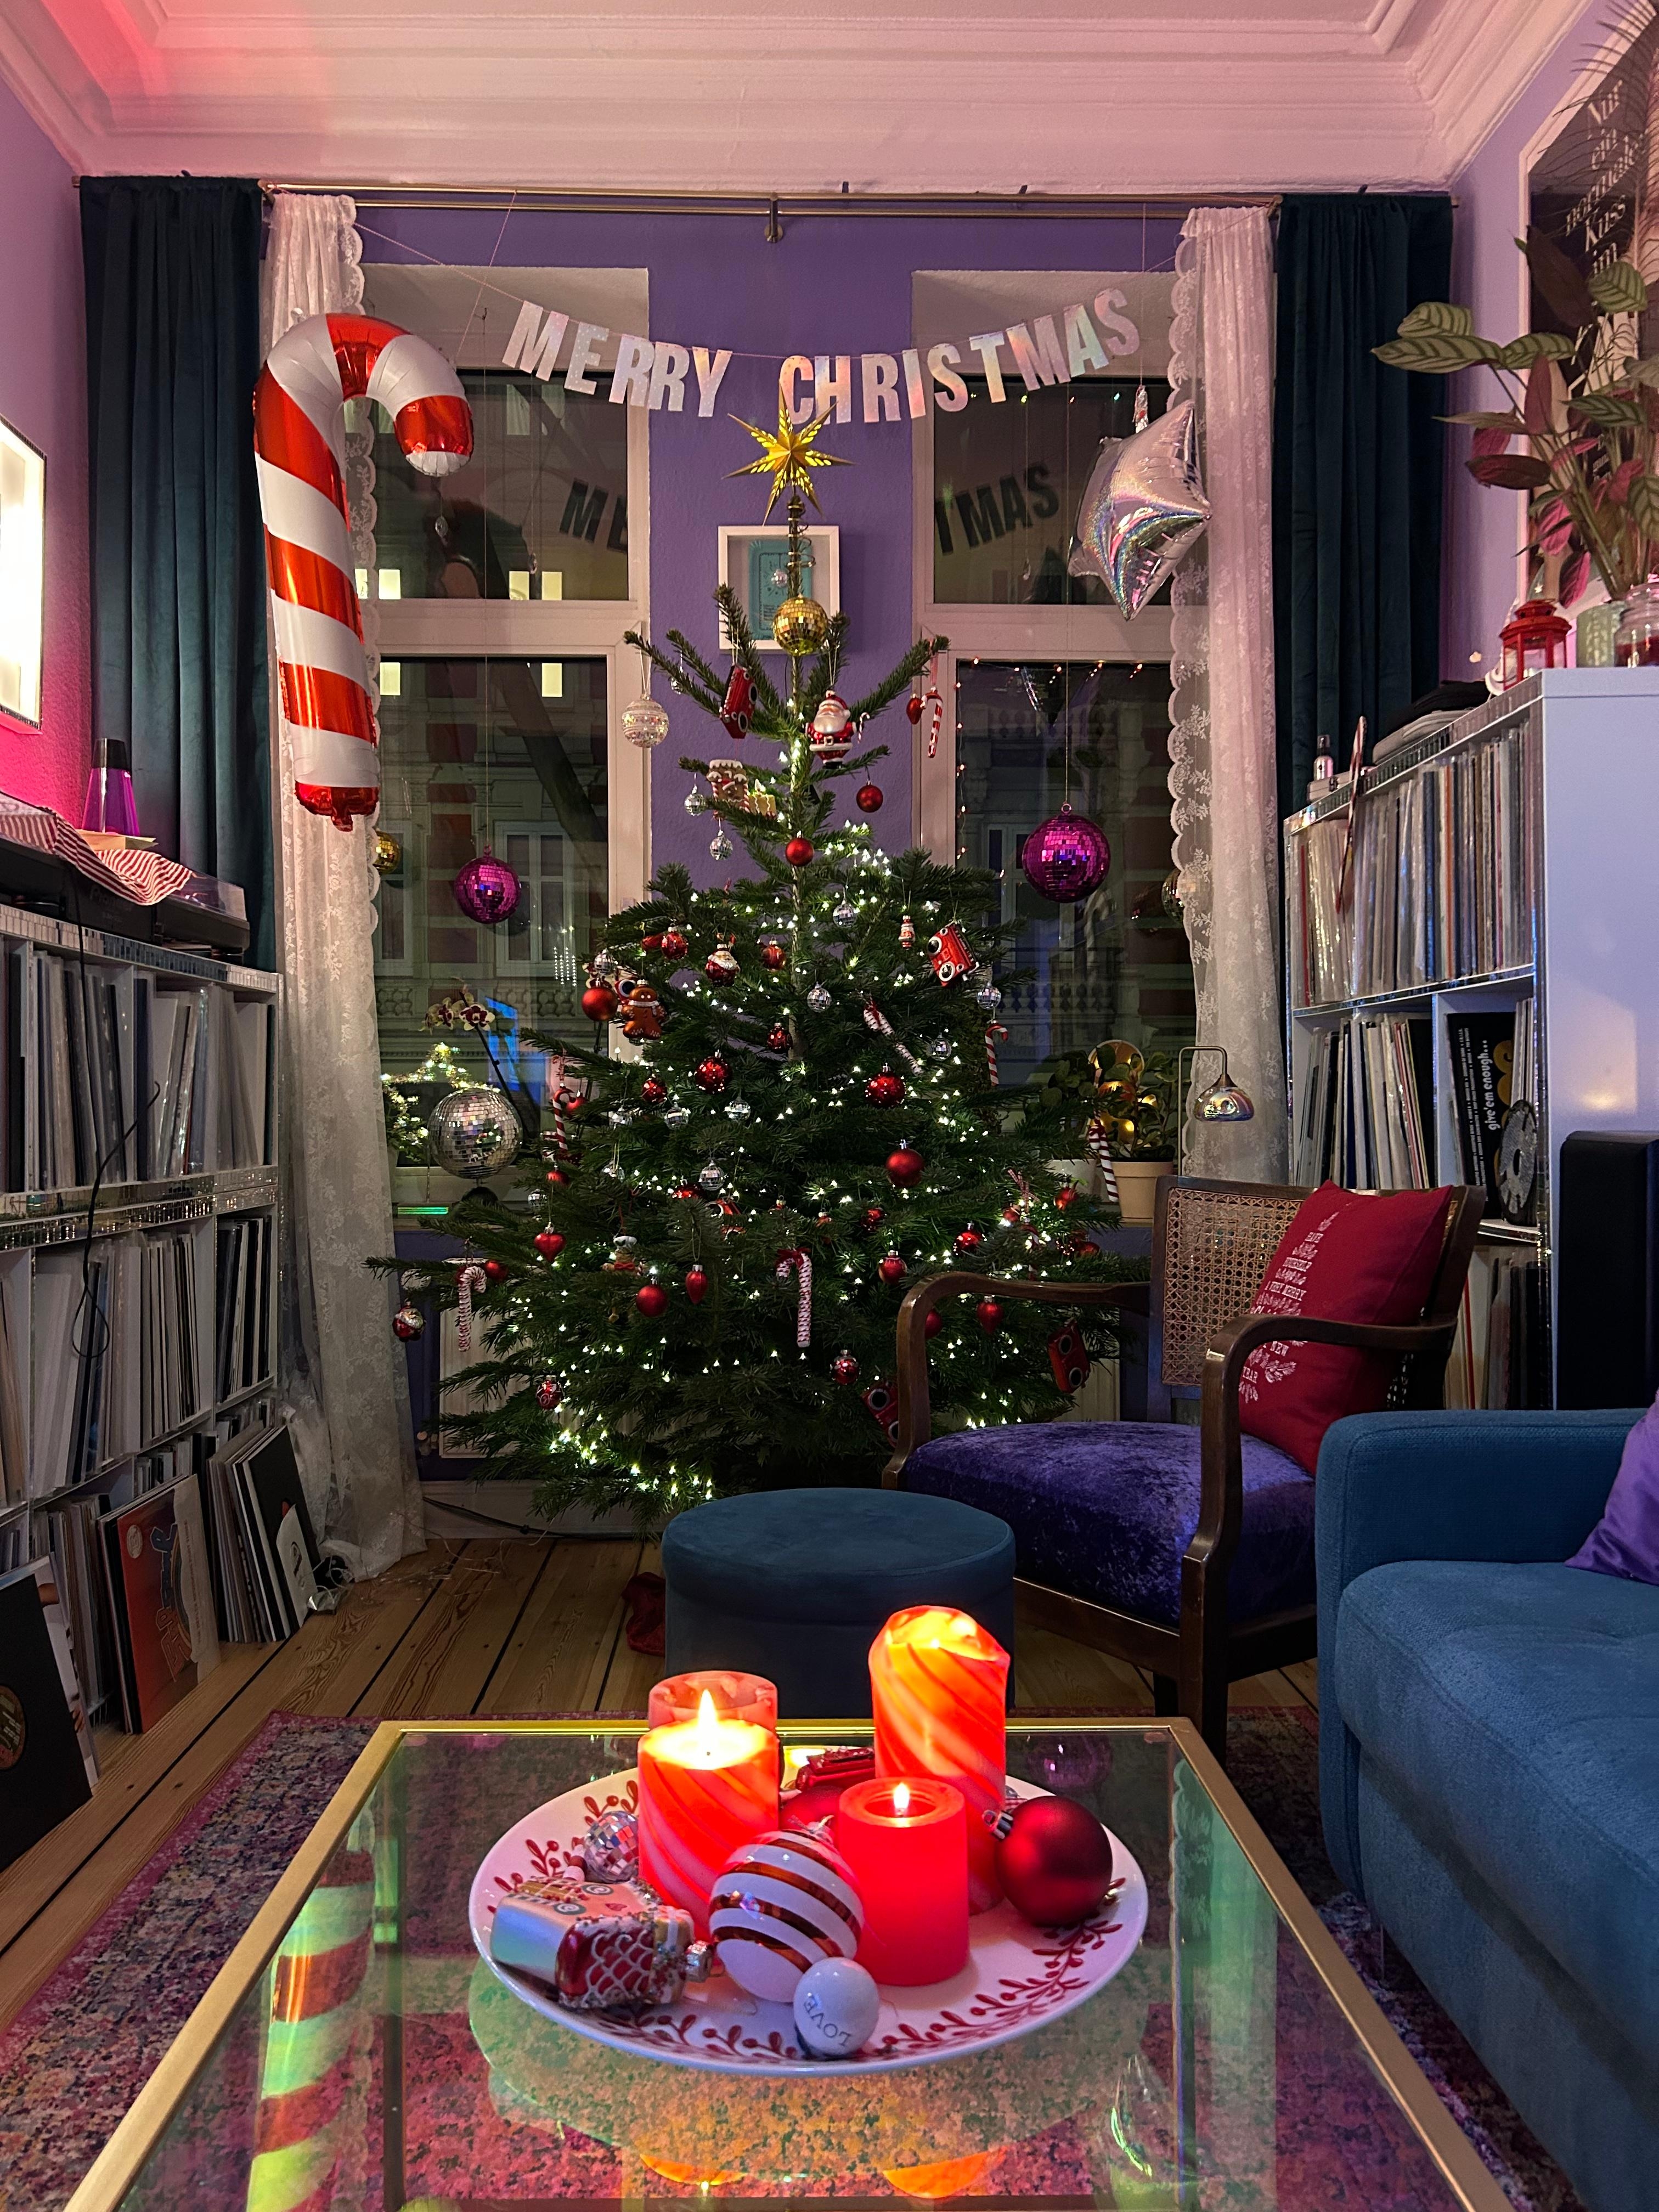 Der Baum ist geschmückt, Weihnachten kann kommen 
#weihnachtsbaum #eclectic #xmas #livingroom #purple #candycane